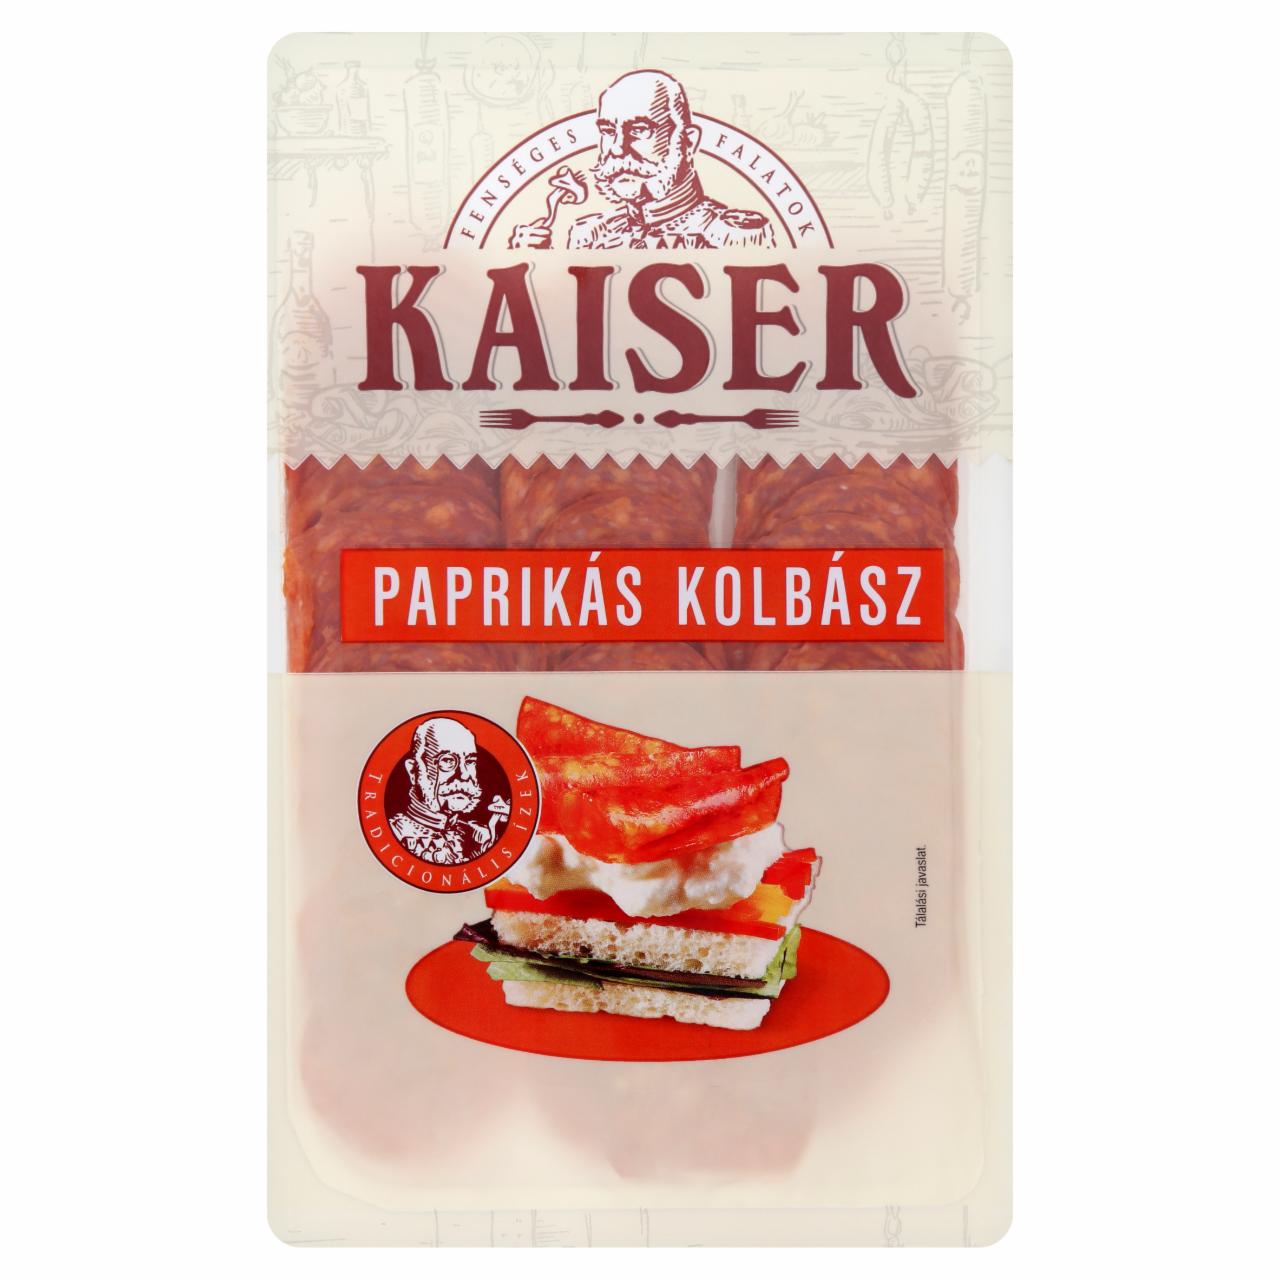 Képek - Kaiser paprikás kolbász 75 g